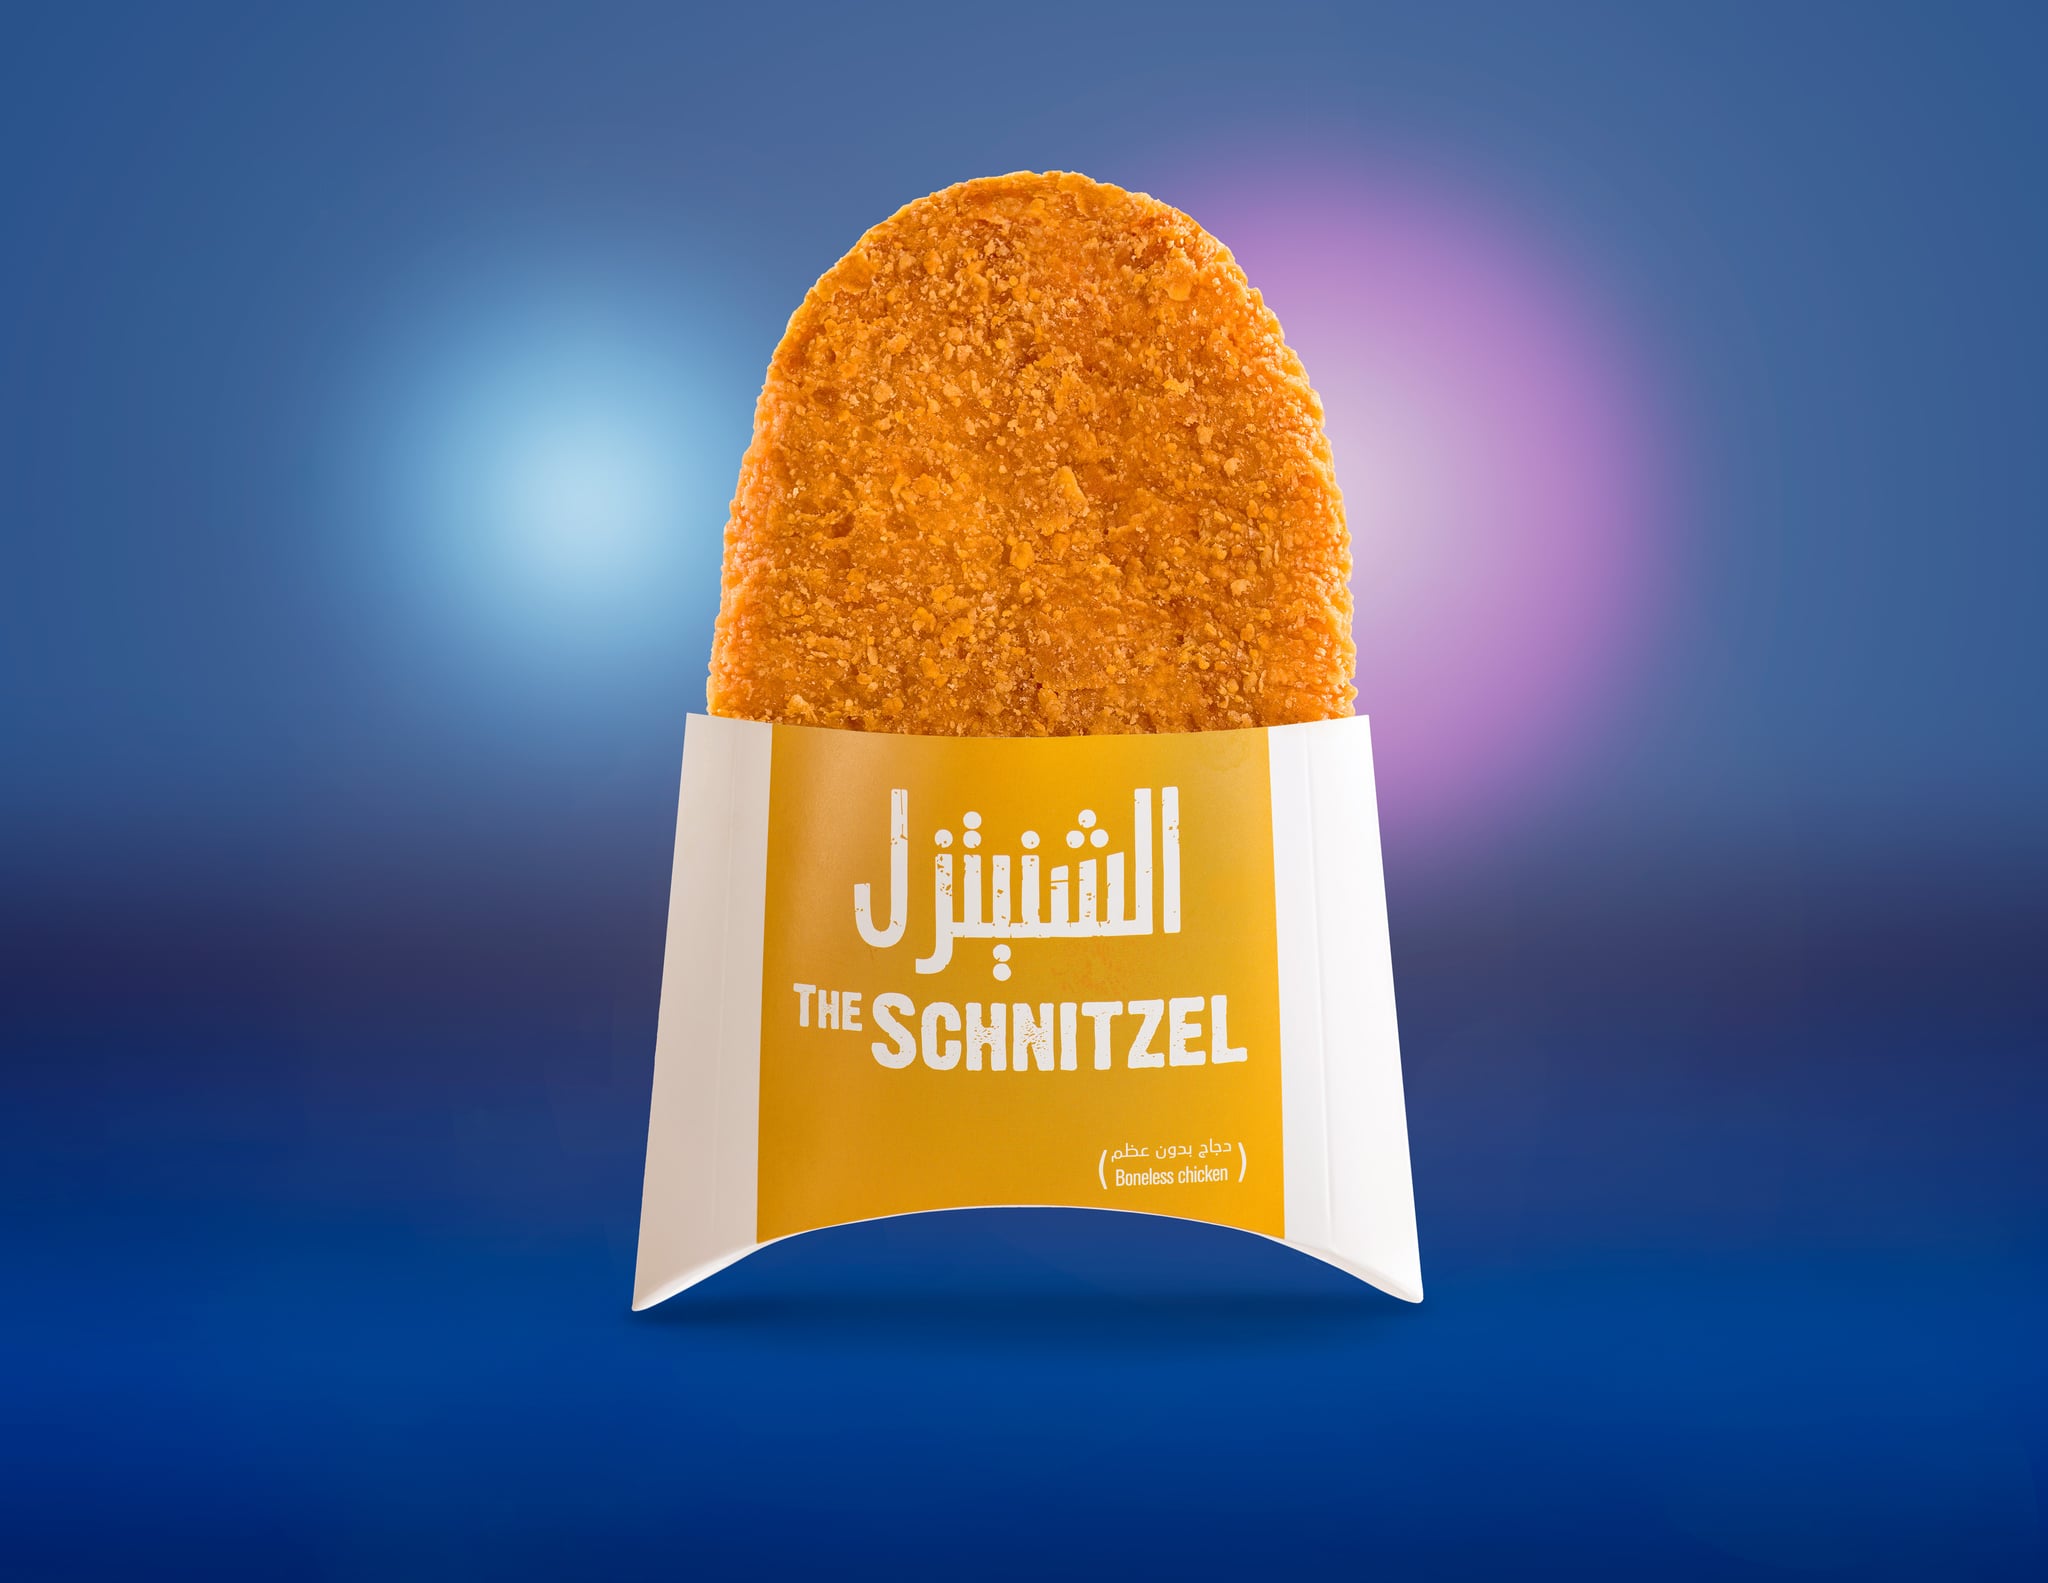 ماكدونالدز الإمارات تطلق وجبة شنيتزل الدجاج Popsugar